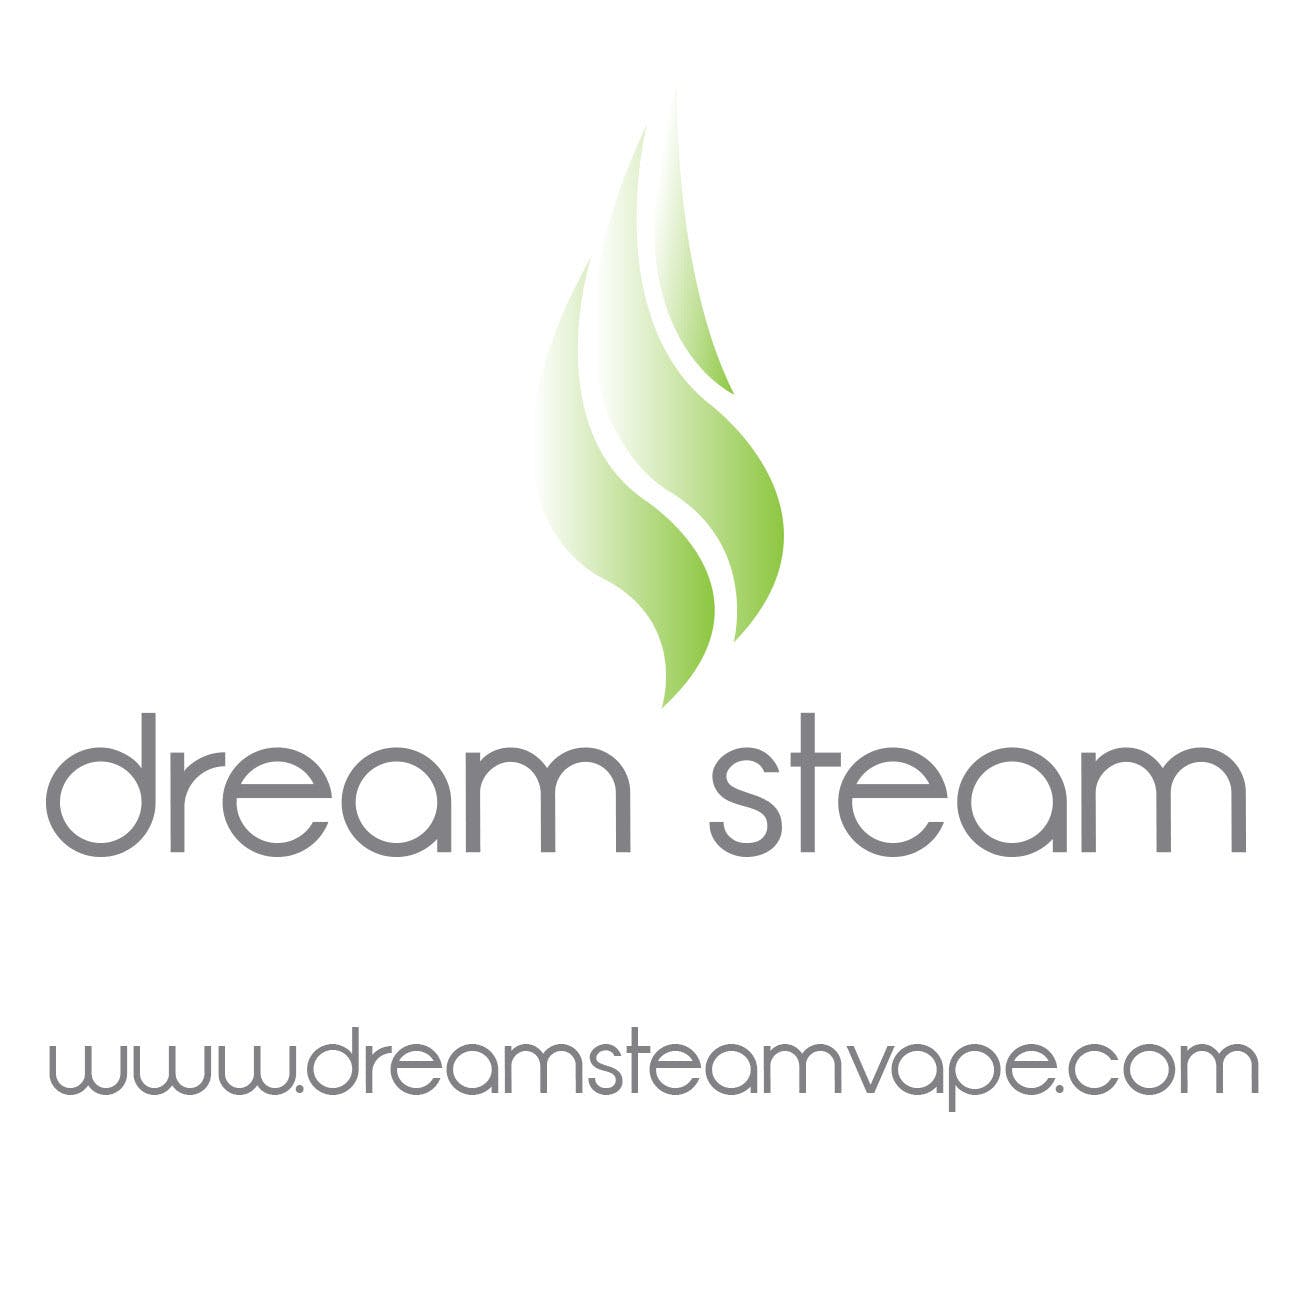 Dream Steam Pure: Green Wildfire